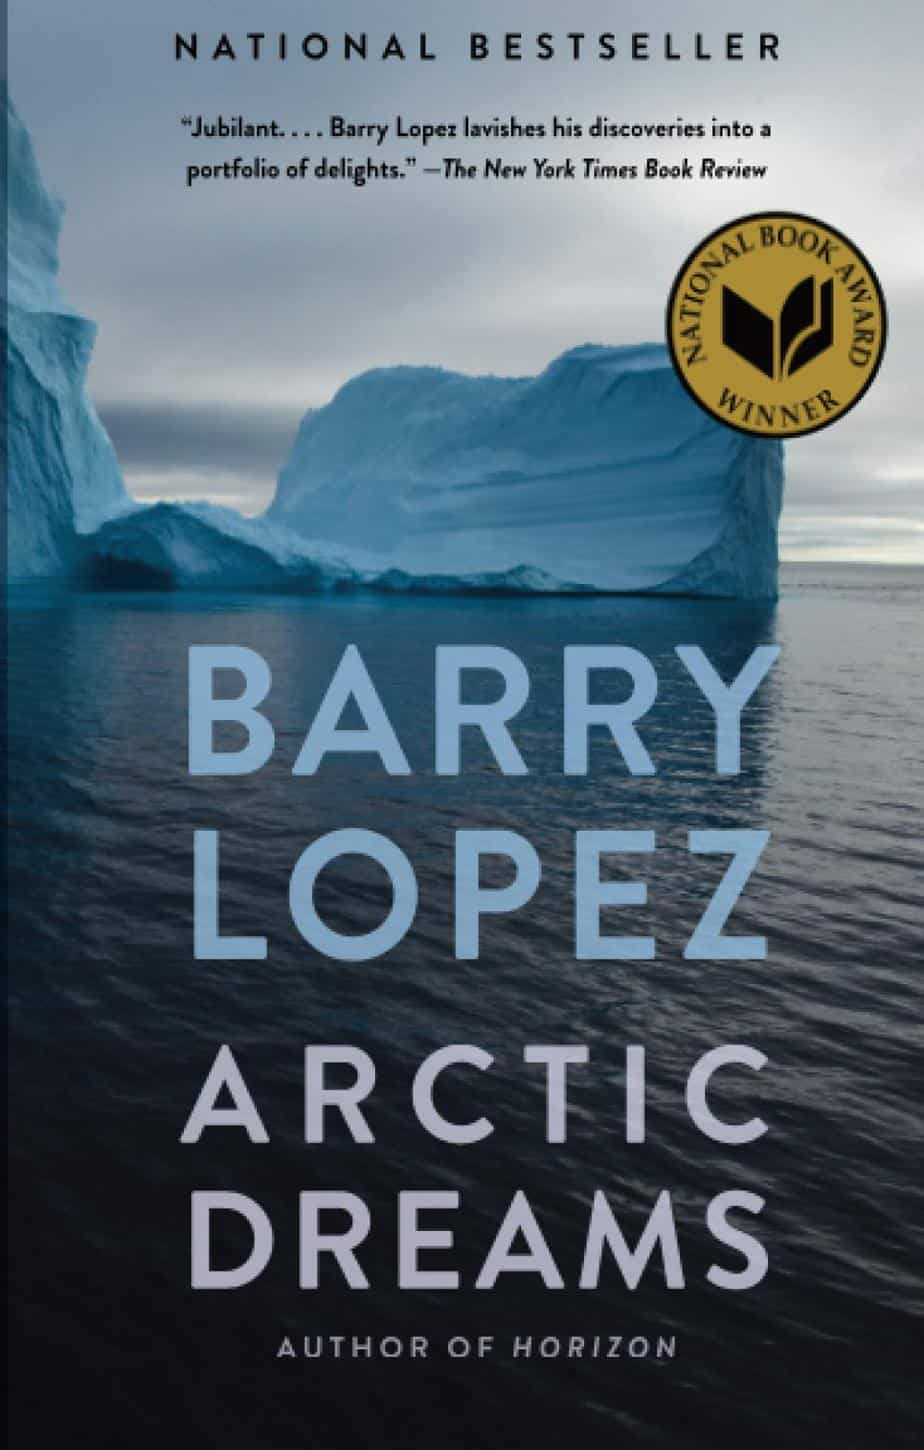 Barry Lopez, Arctic Dreams (1986)